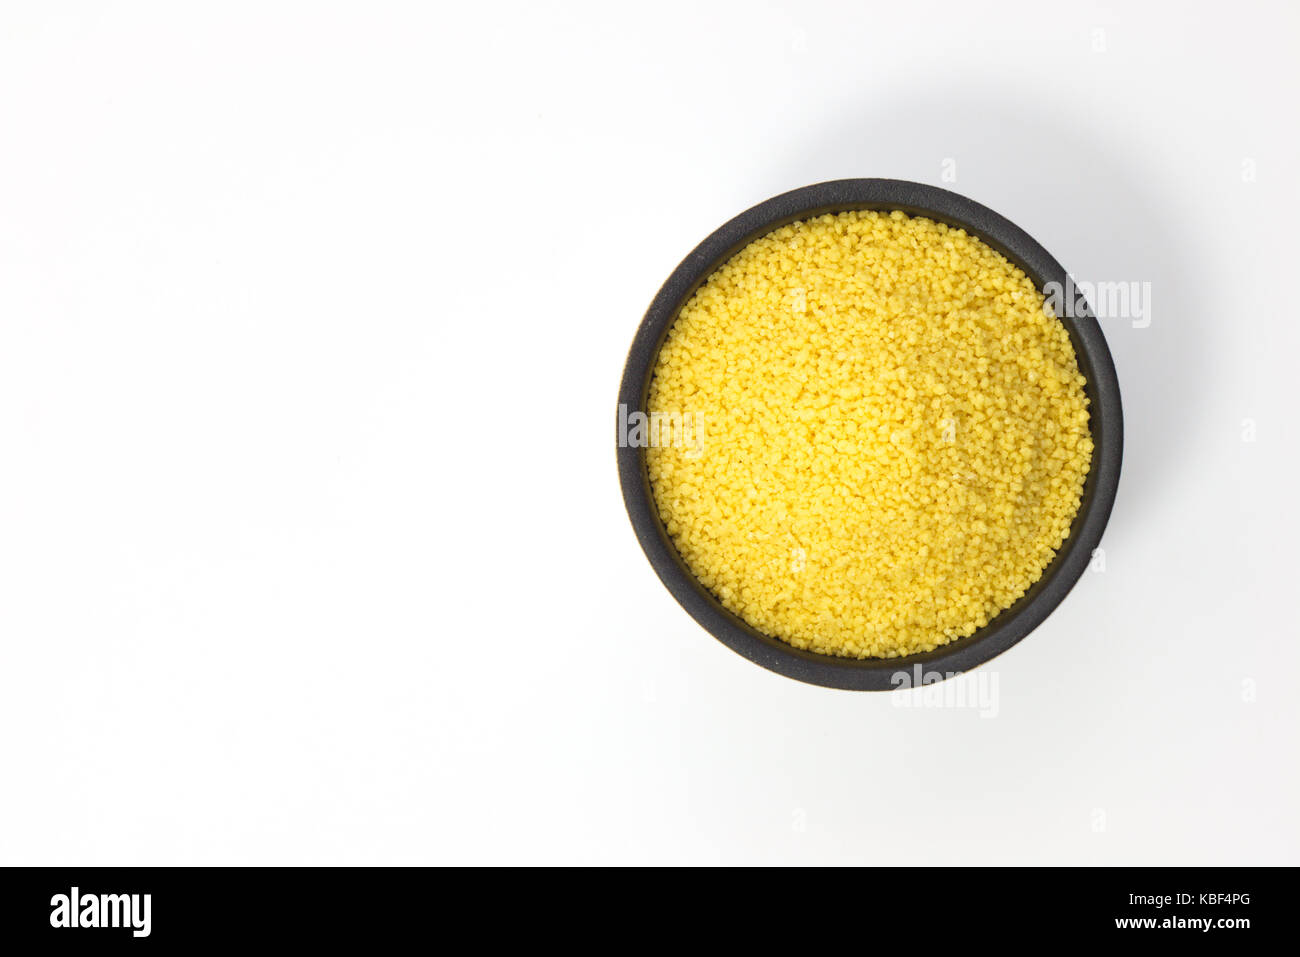 Concetto di cibo crudo couscous organico in un recipiente su sfondo bianco con spazio di copia Foto Stock